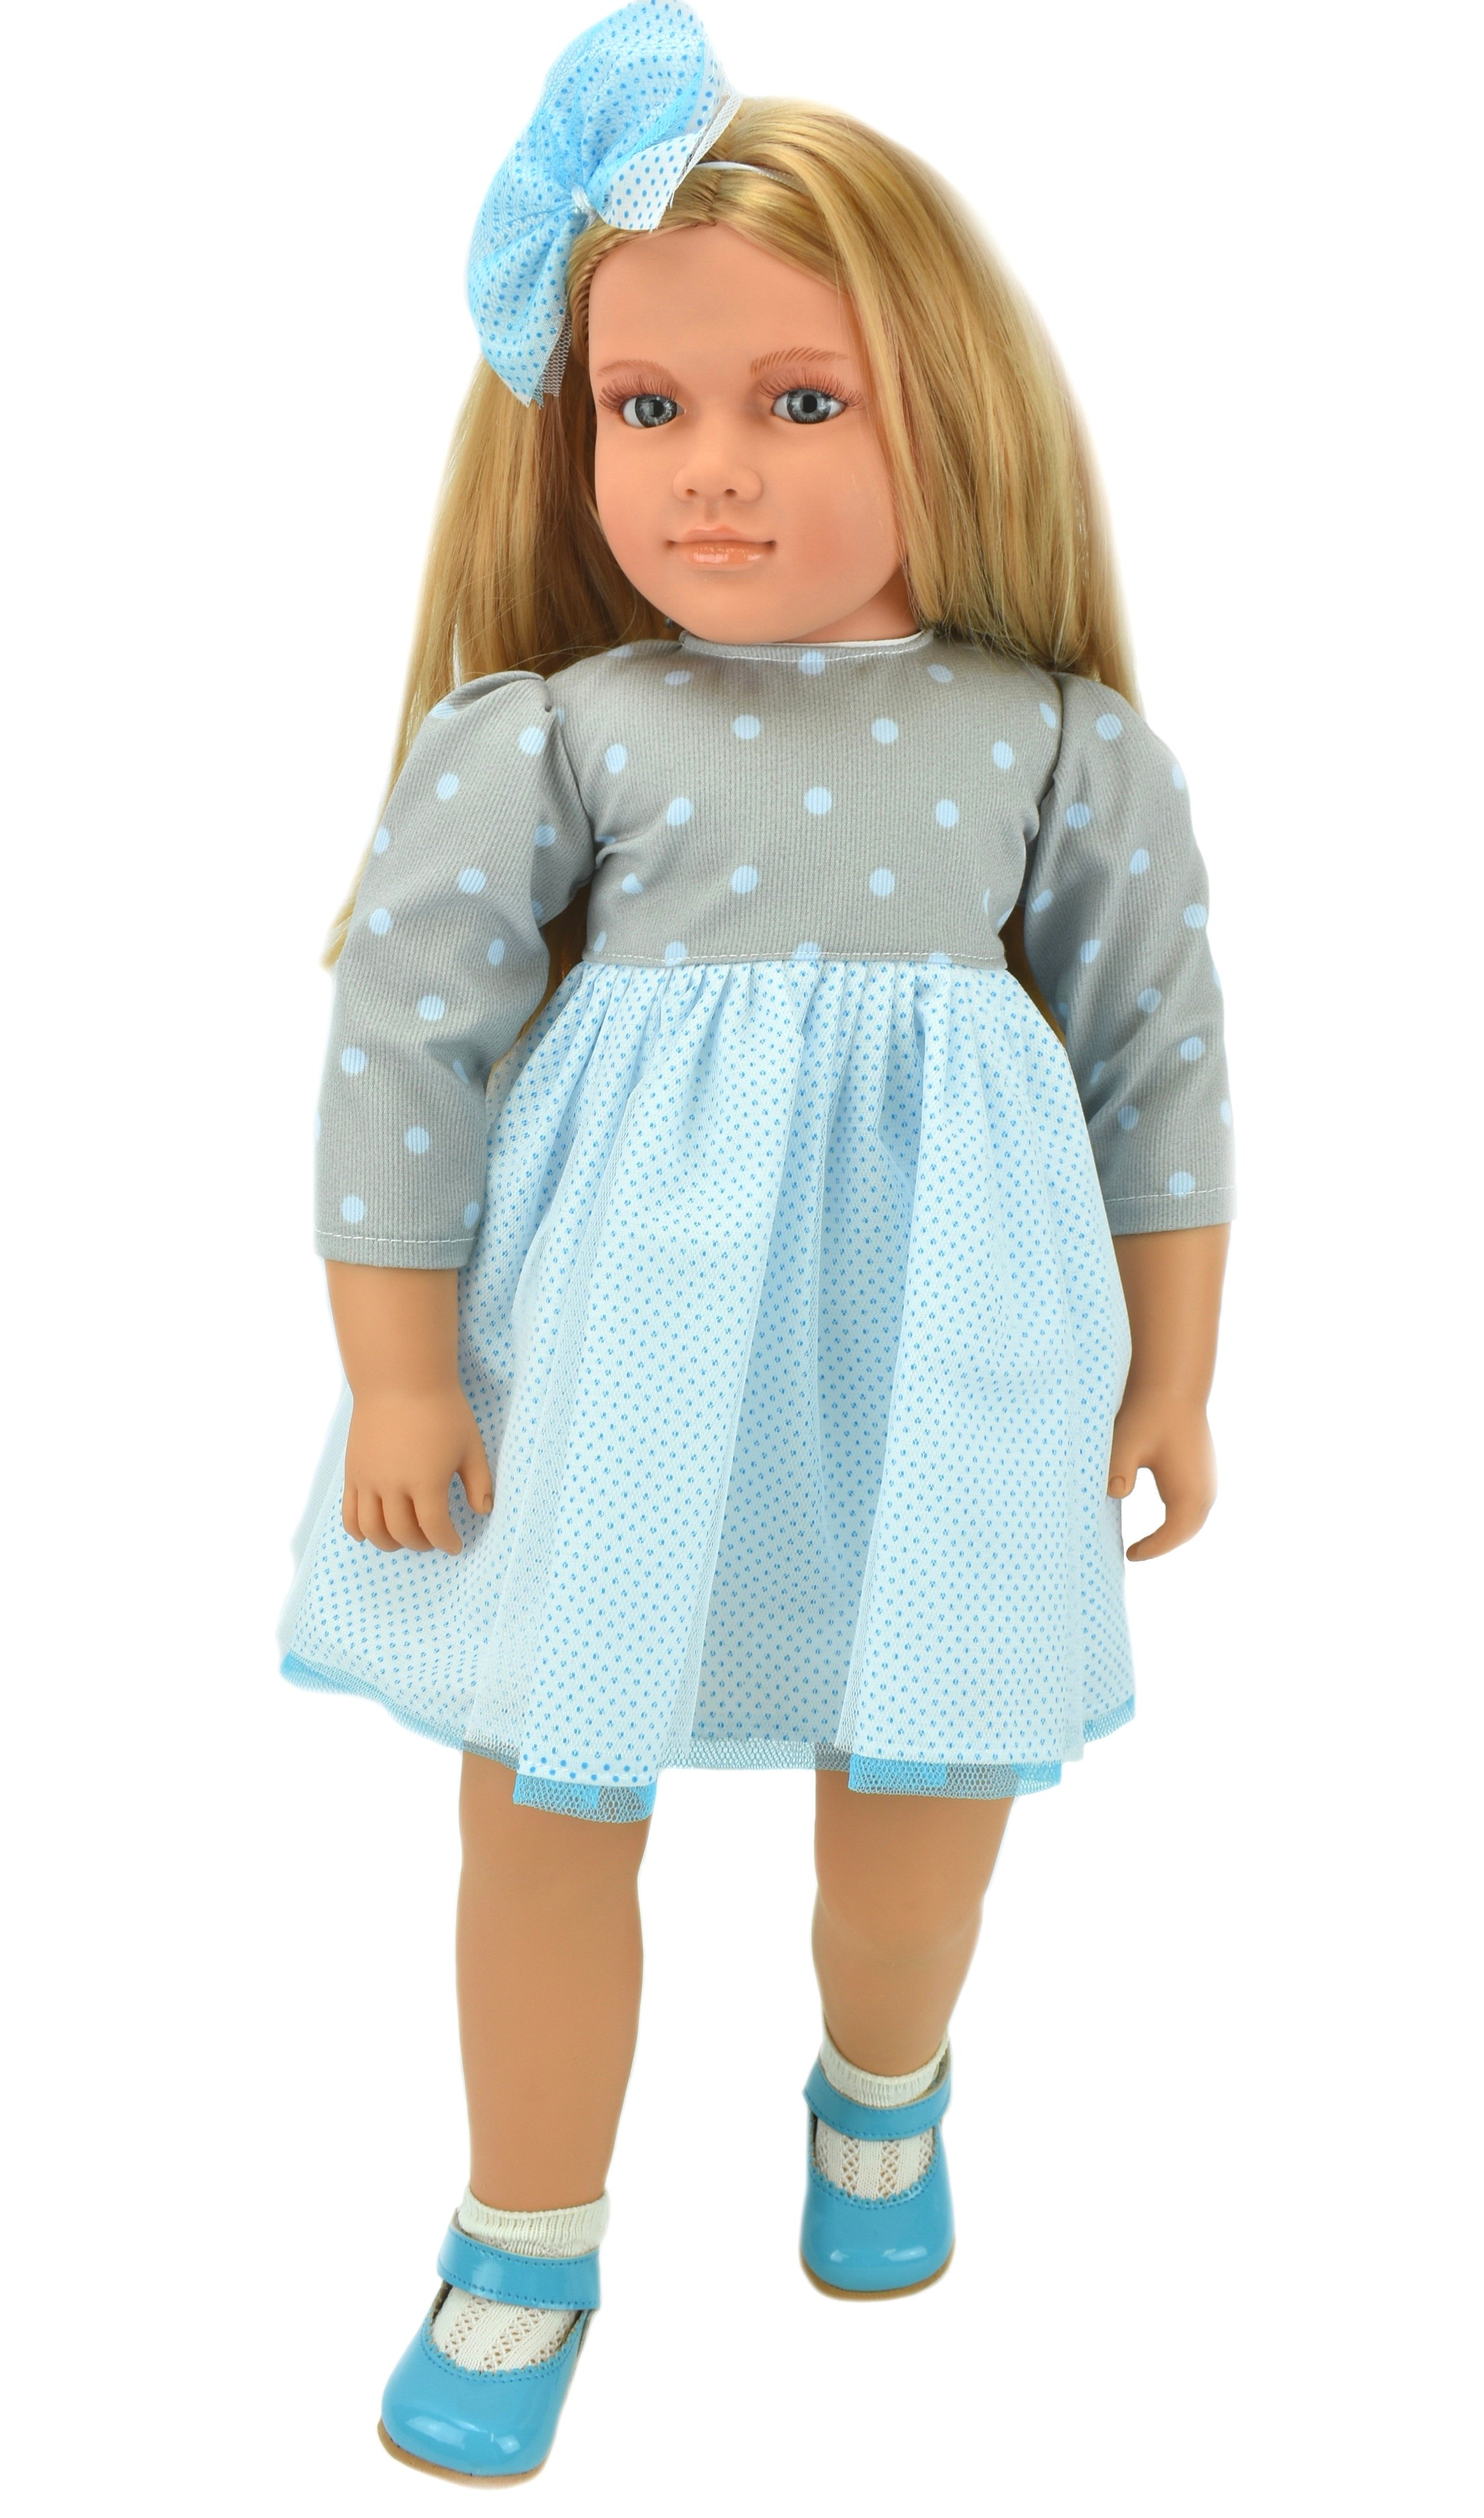 Коллекционная кукла Lamagik Ширли блондинка, в серо-белом платье в горох, 62 см, B9004 кукла lamagik бетти темнокожая в платье в клетку с красным бантом 30 см 3031